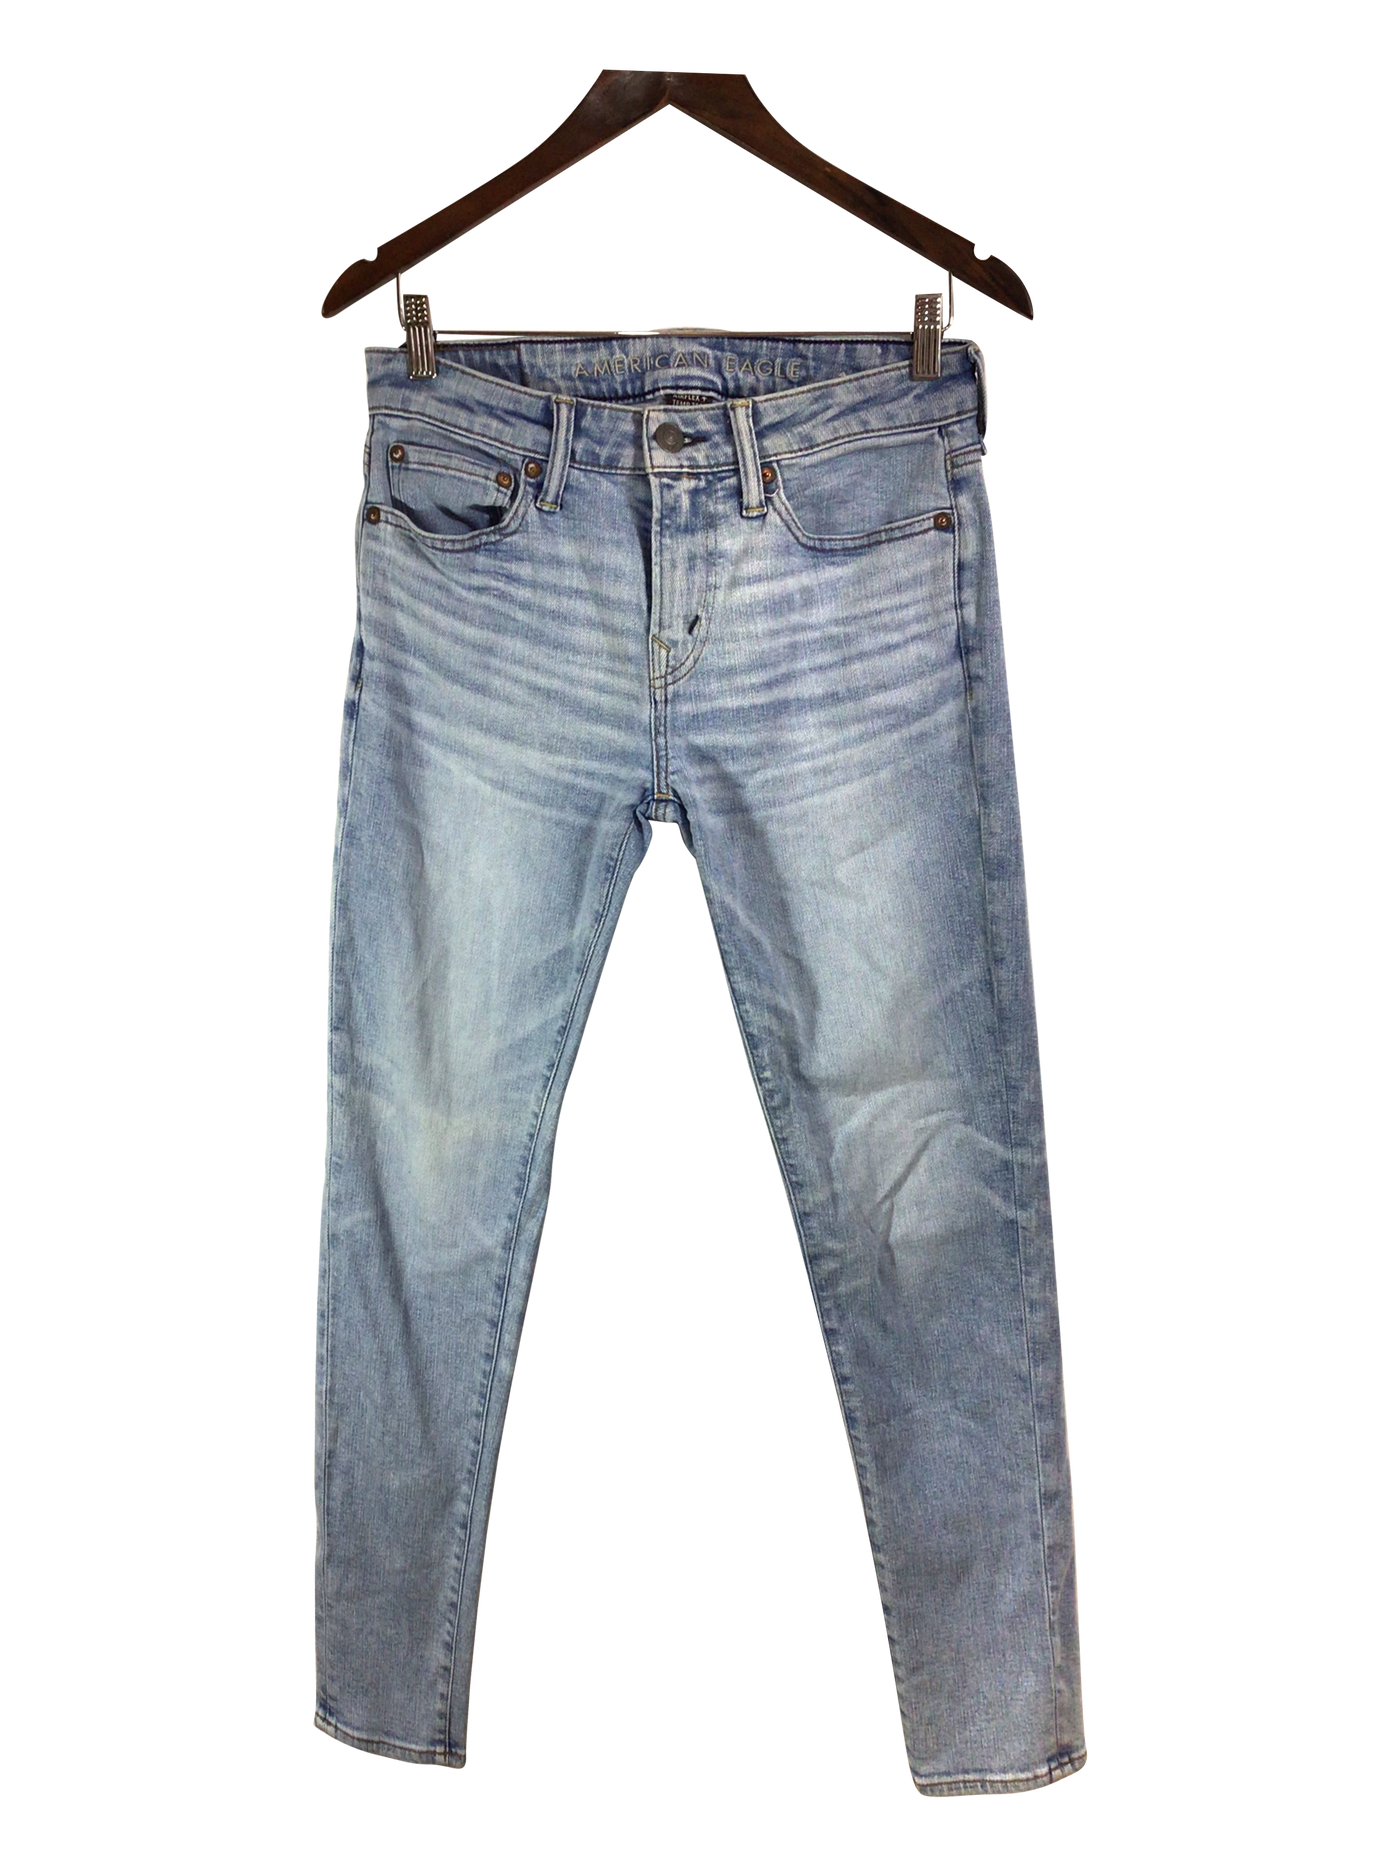 AMERICAN EAGLE Women Straight-Legged Jeans Regular fit in Blue - Size 30x30 | 14.9 $ KOOP